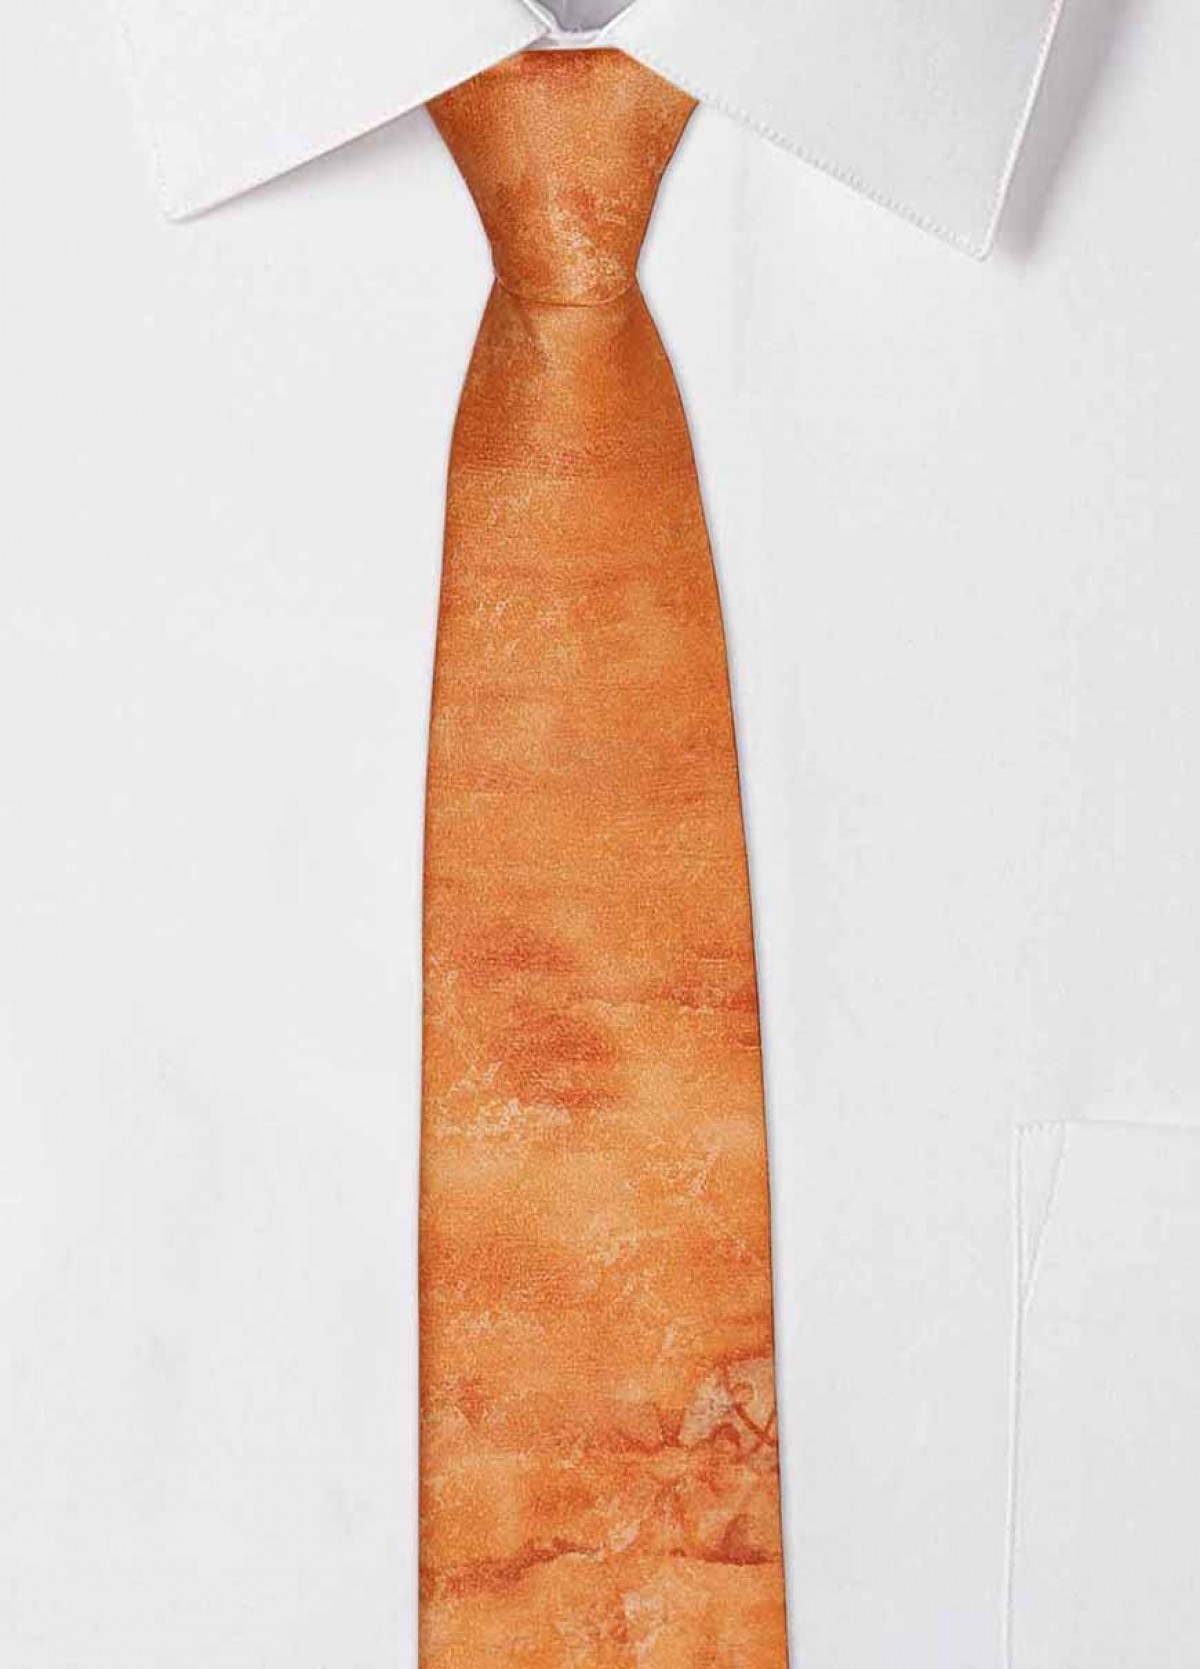 The Light Orange Signature Tie